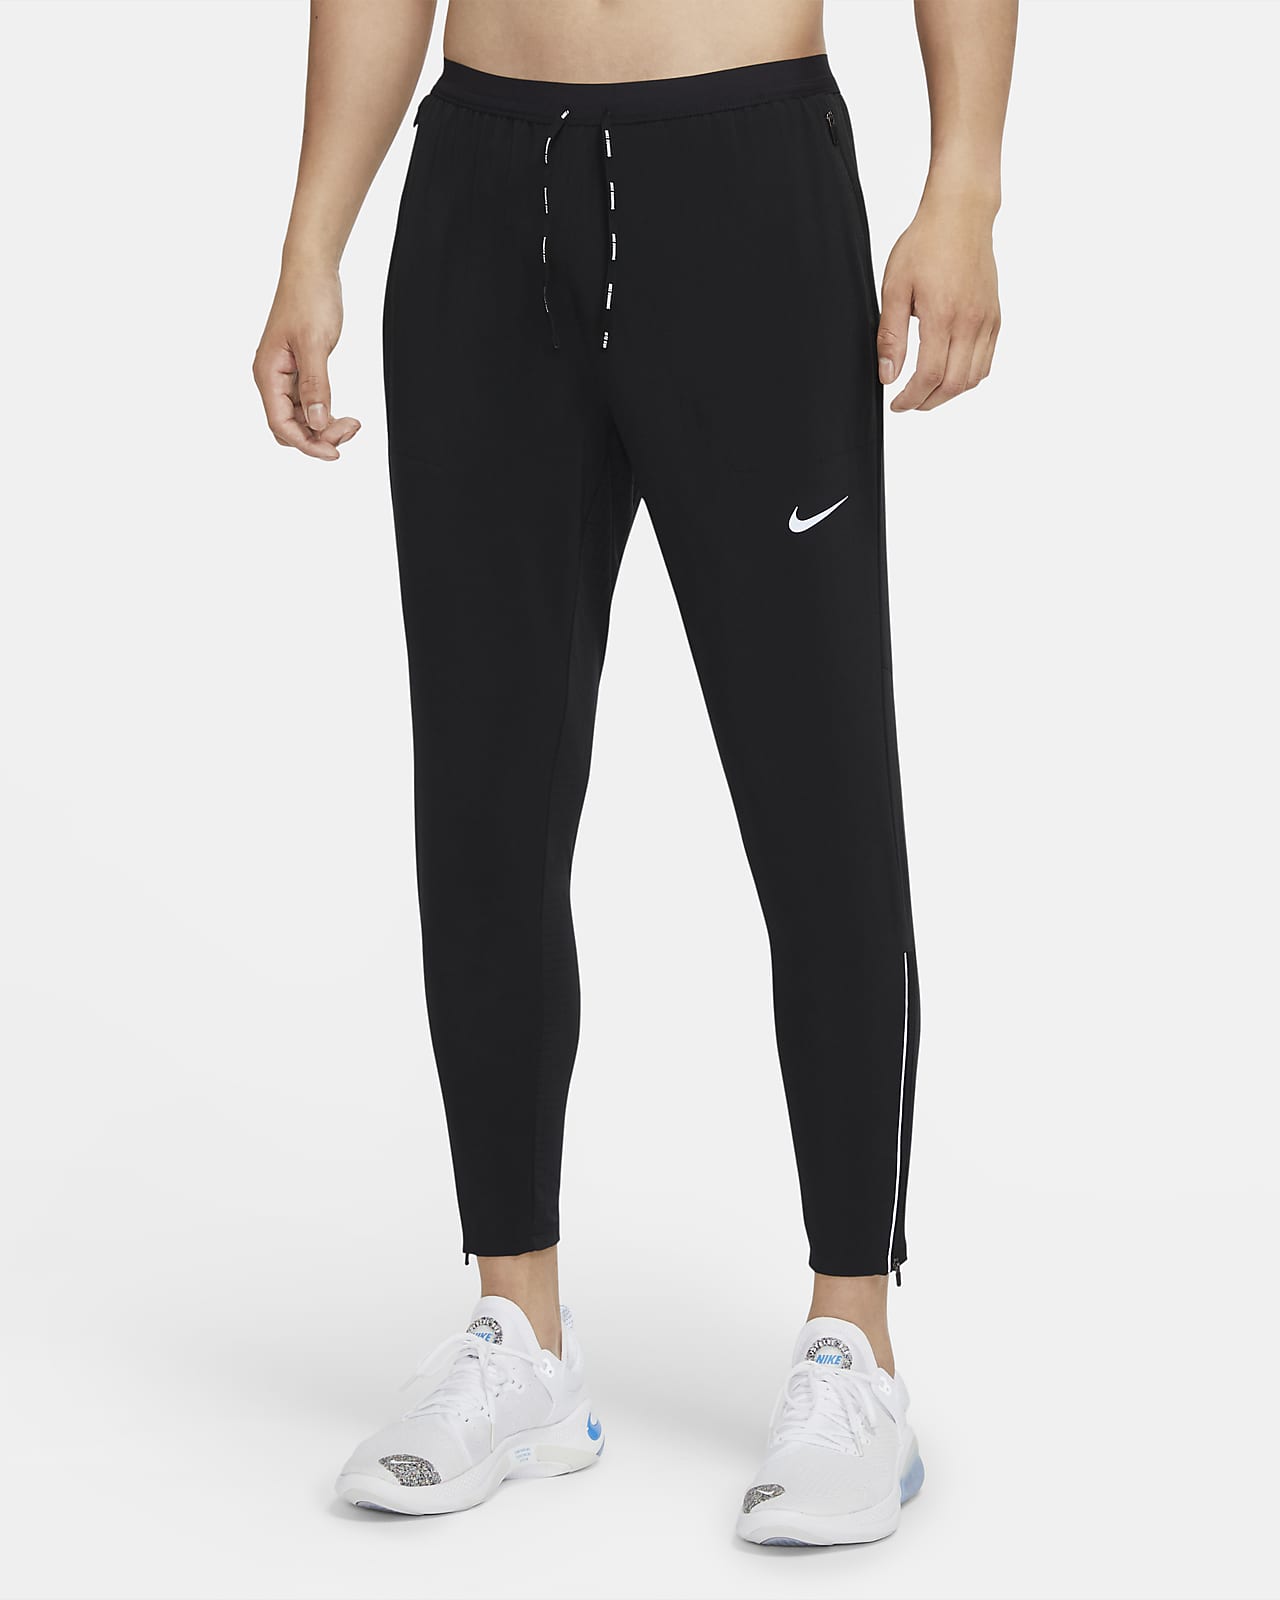 Ανδρικό υφαντό παντελόνι για τρέξιμο Nike Phenom Elite